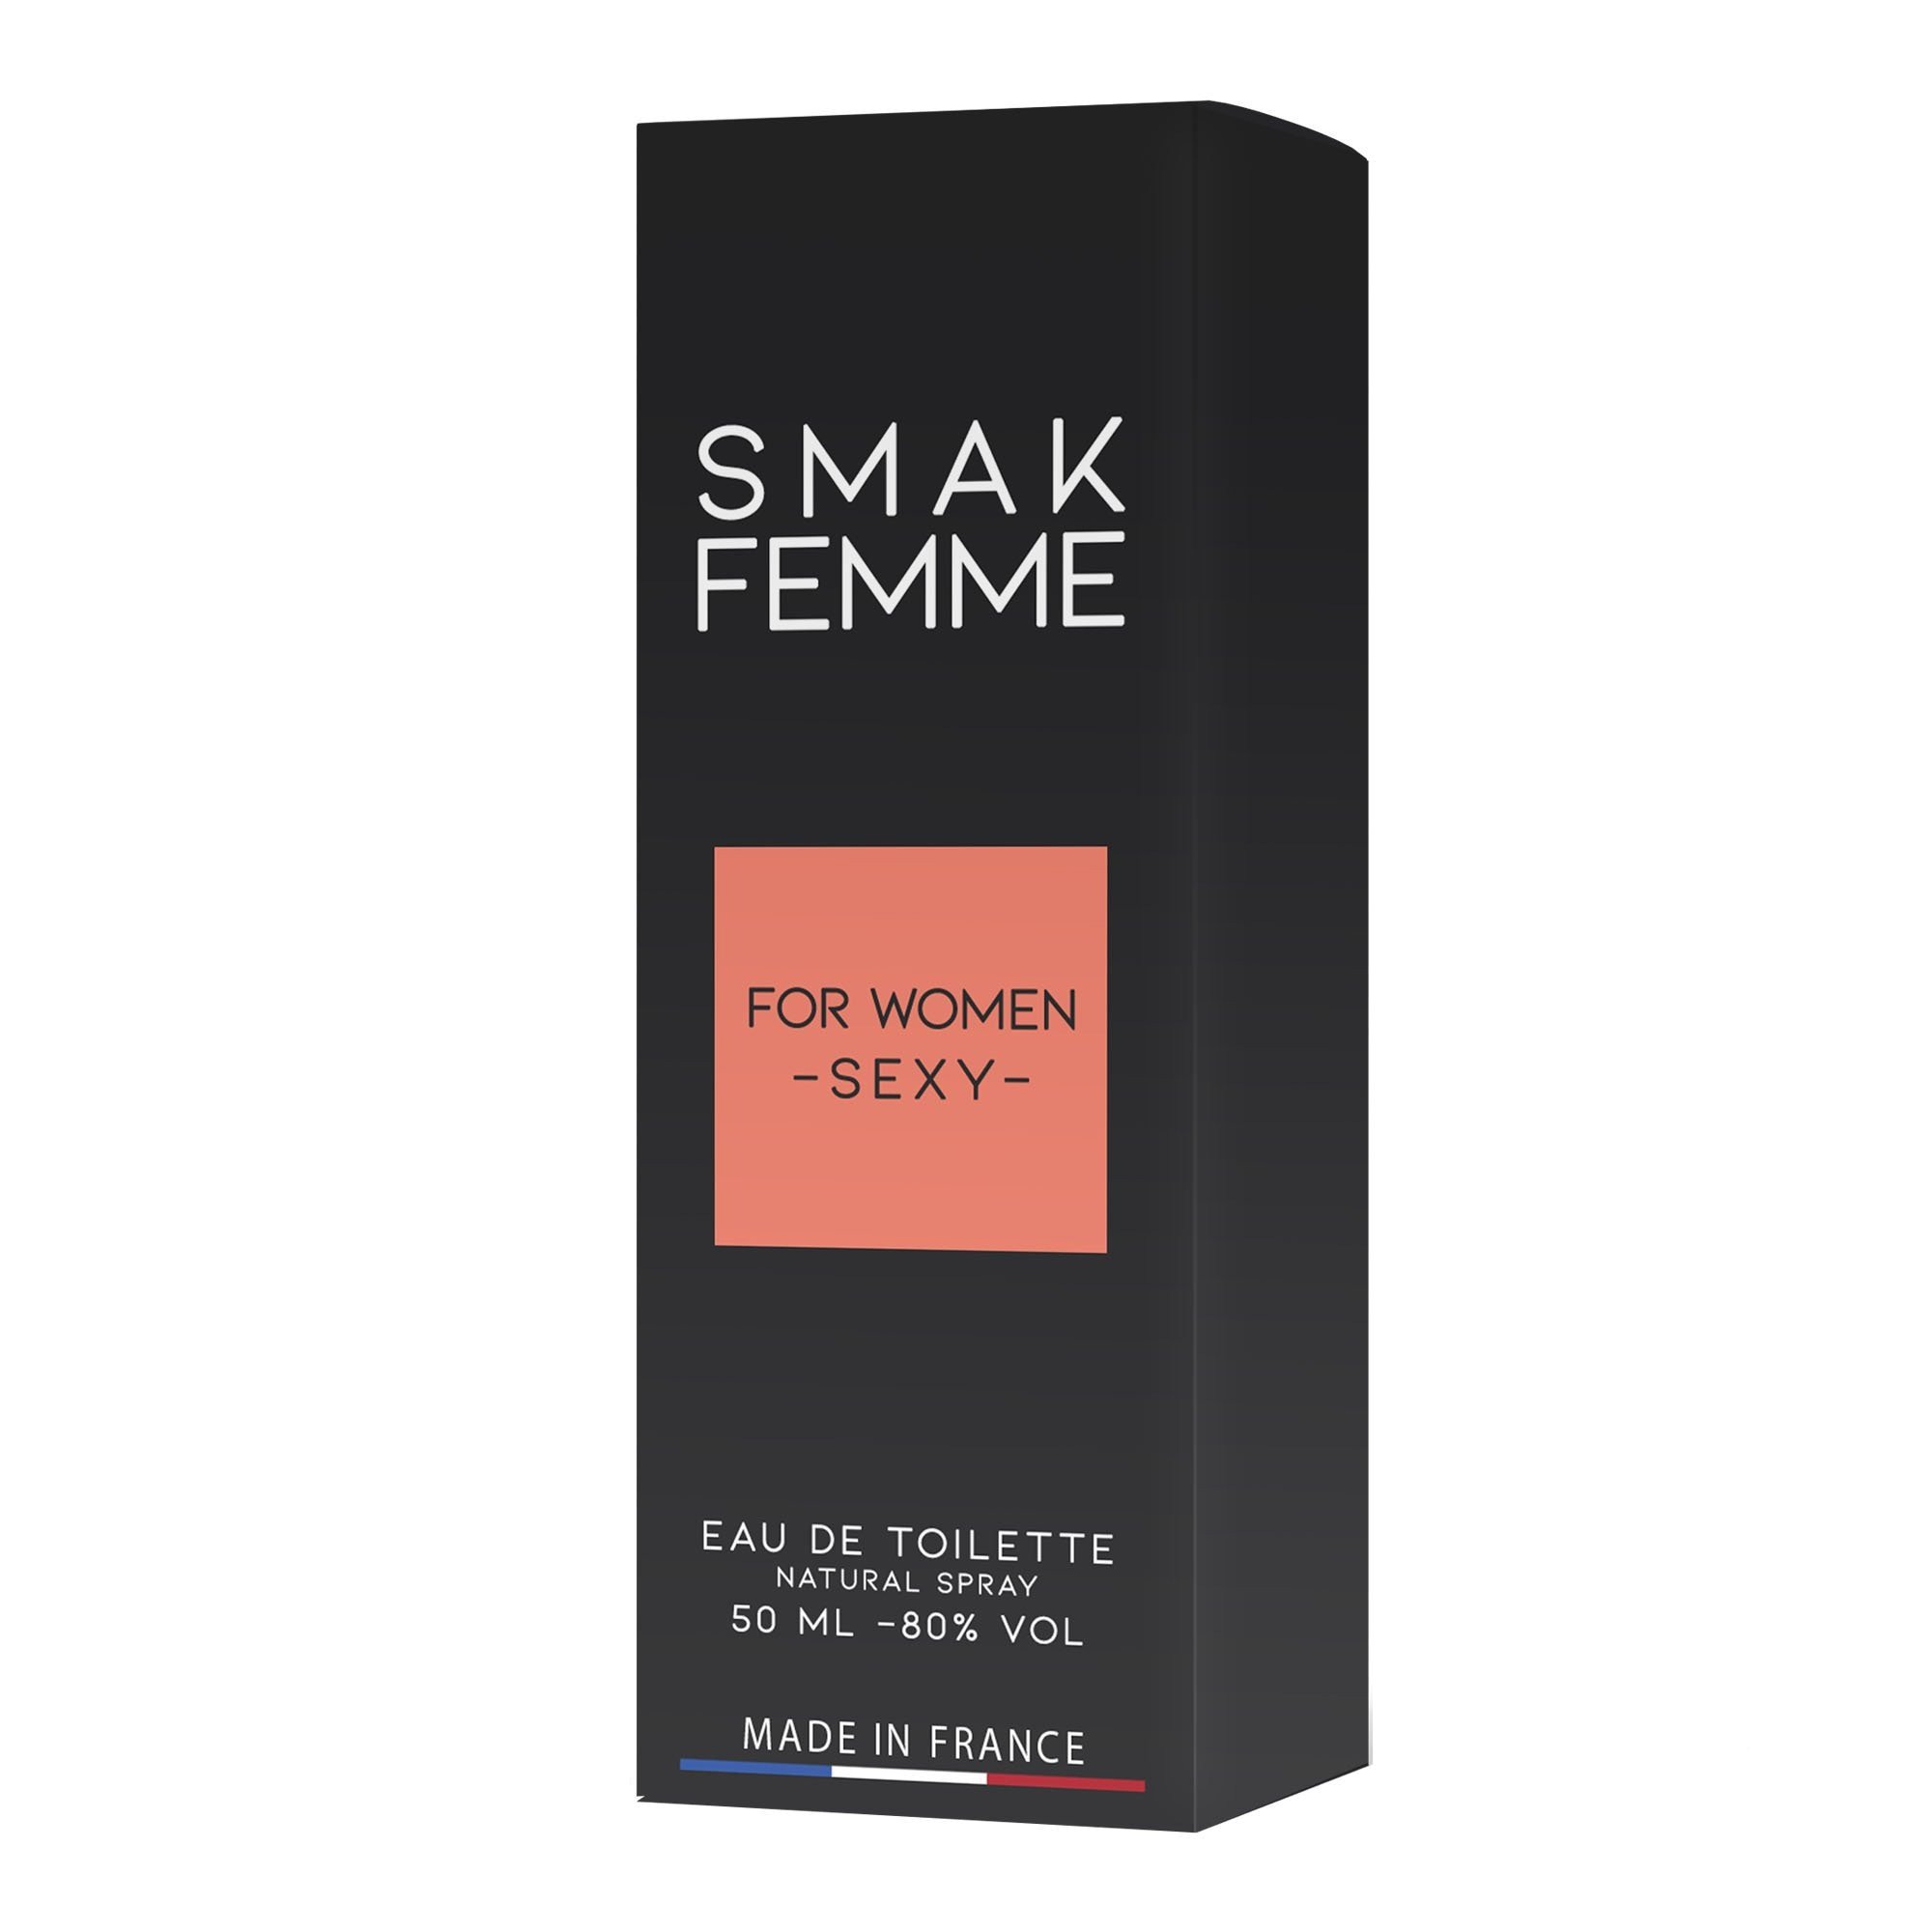 Moteriški feromoniniai kvepalai „Smak“, 50 ml - Ruf